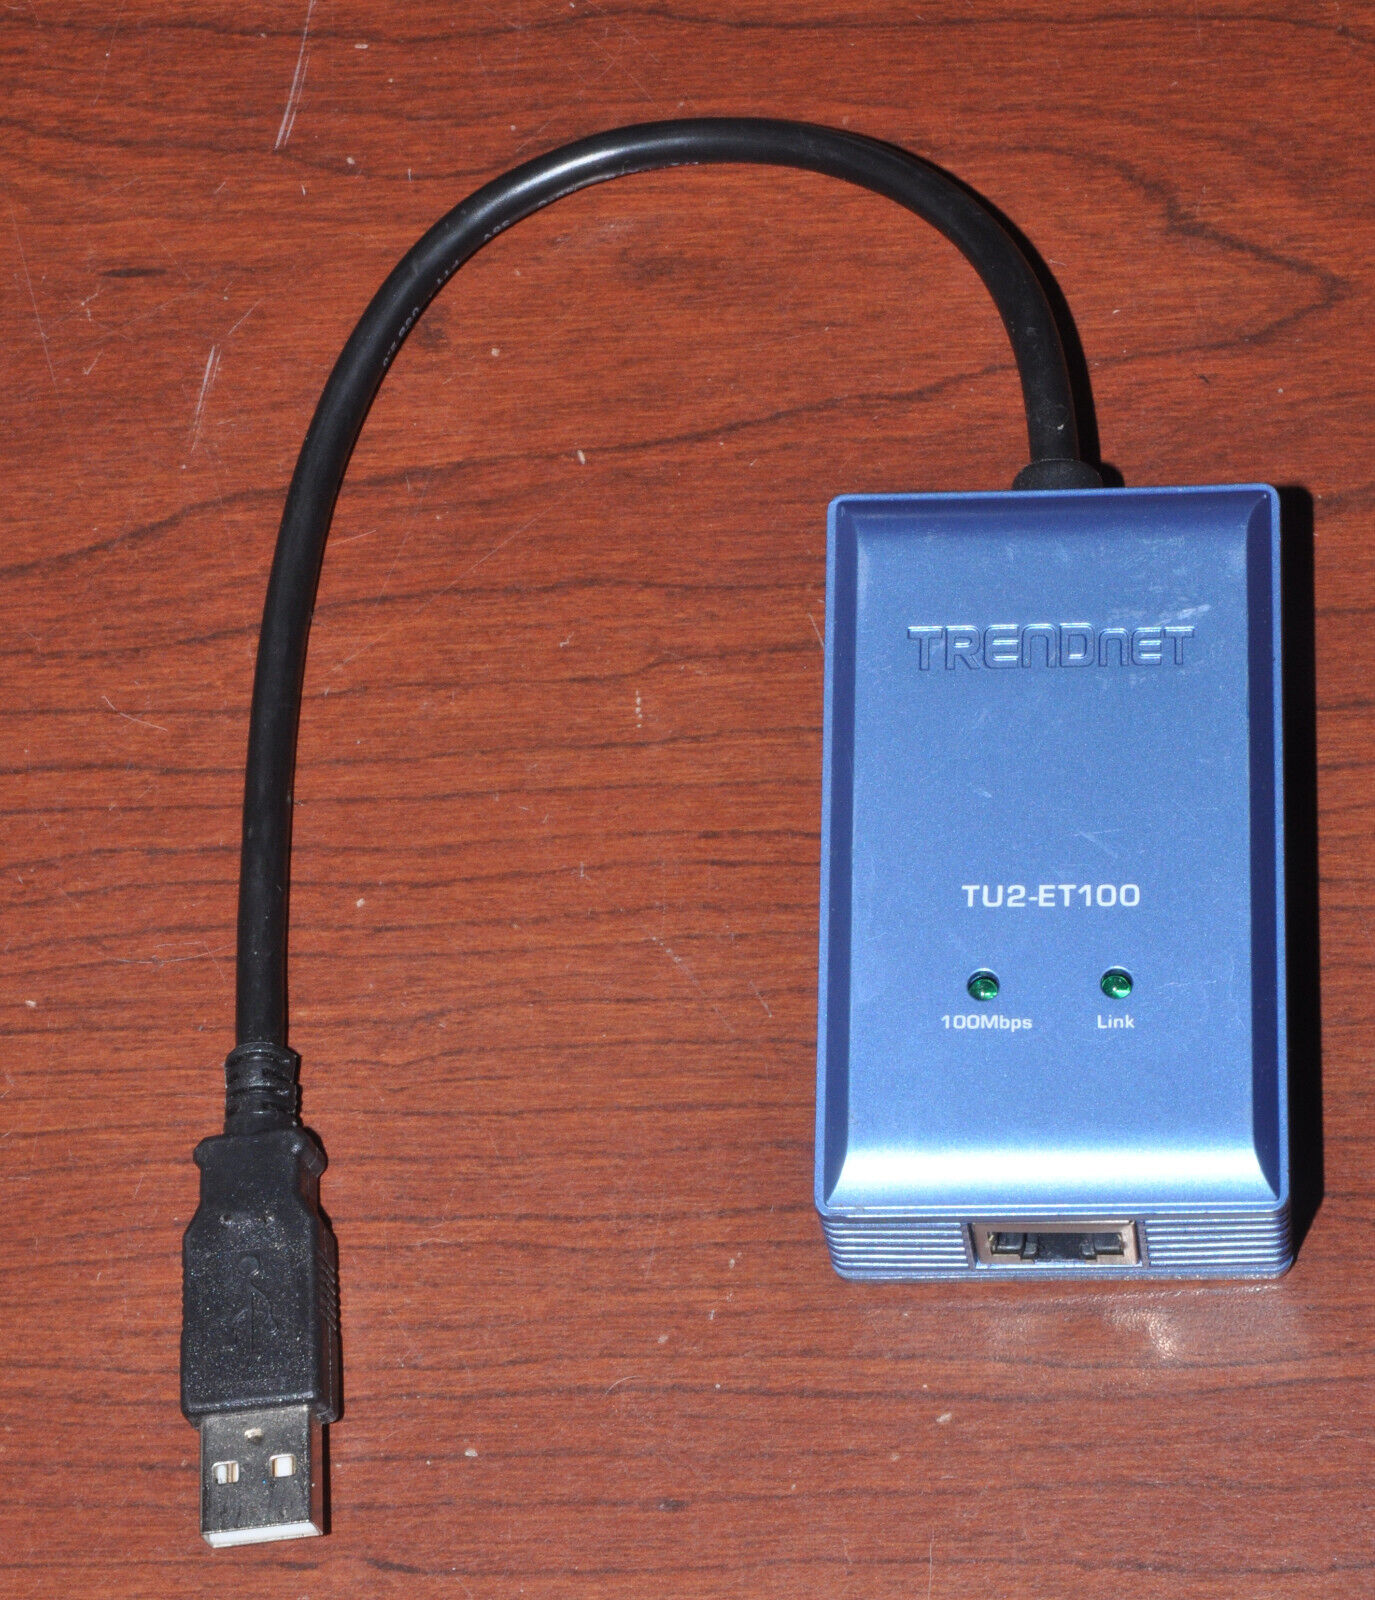 Trendnet TU2-ET100 USB to 10/100 Mbps Ethernet Adapter